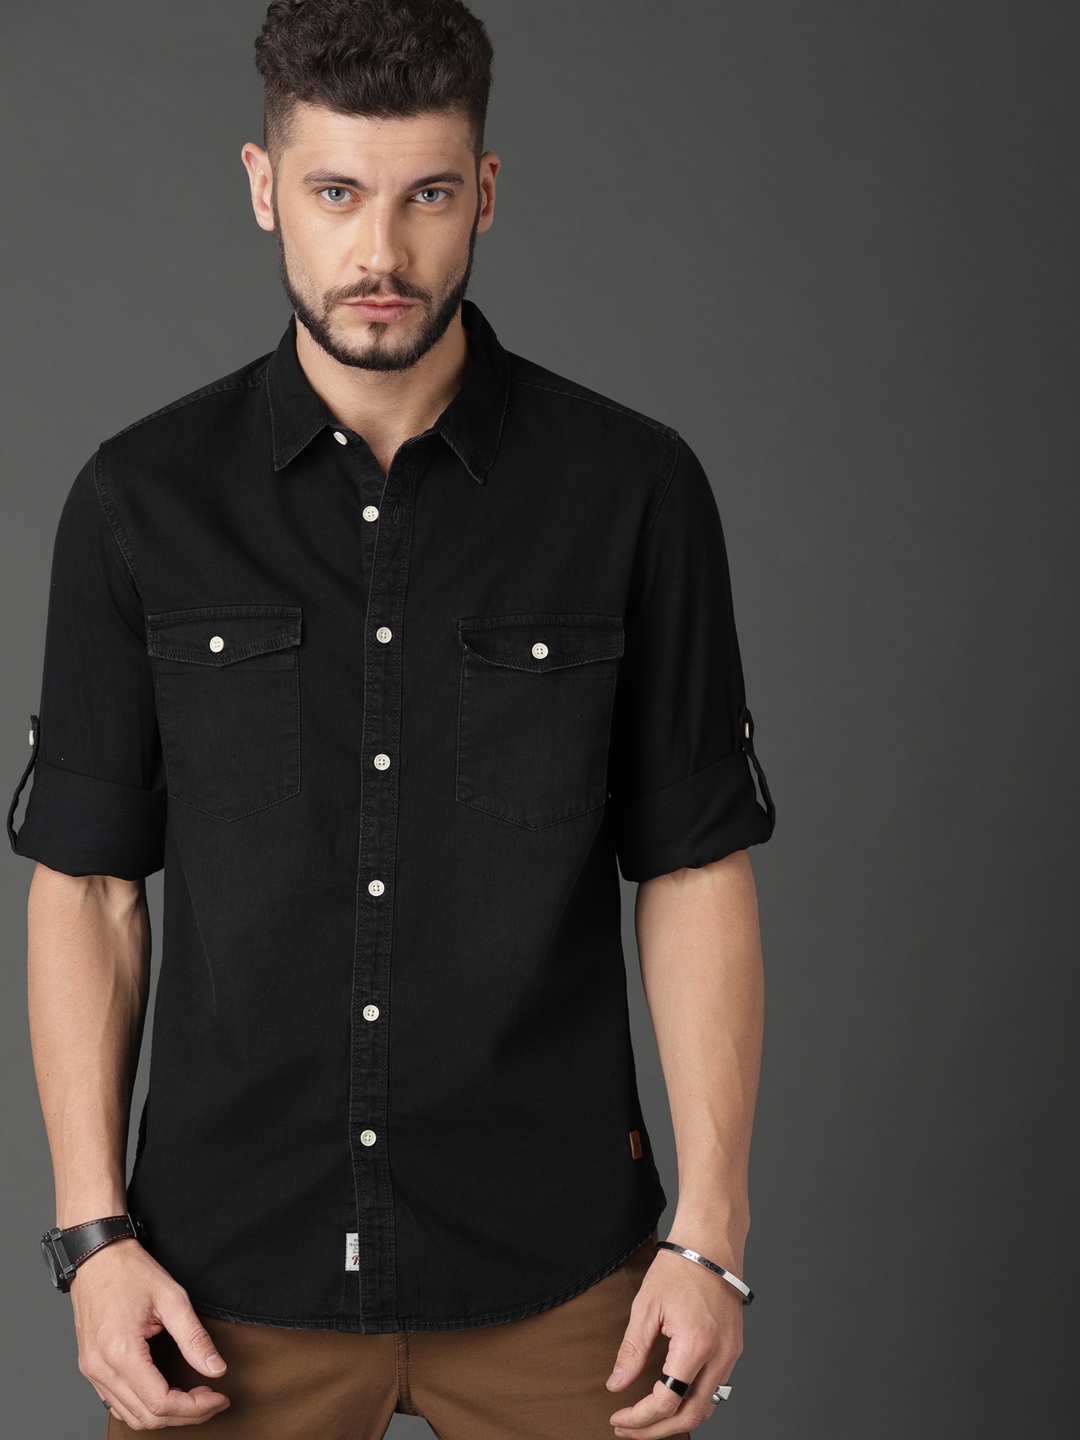 Buy DEZANO Dark Black Denim Cargo Shirt Casual Mandarin Collar Double  Pocket Stylish Comfort Shirt  Dark BlackS at Amazonin